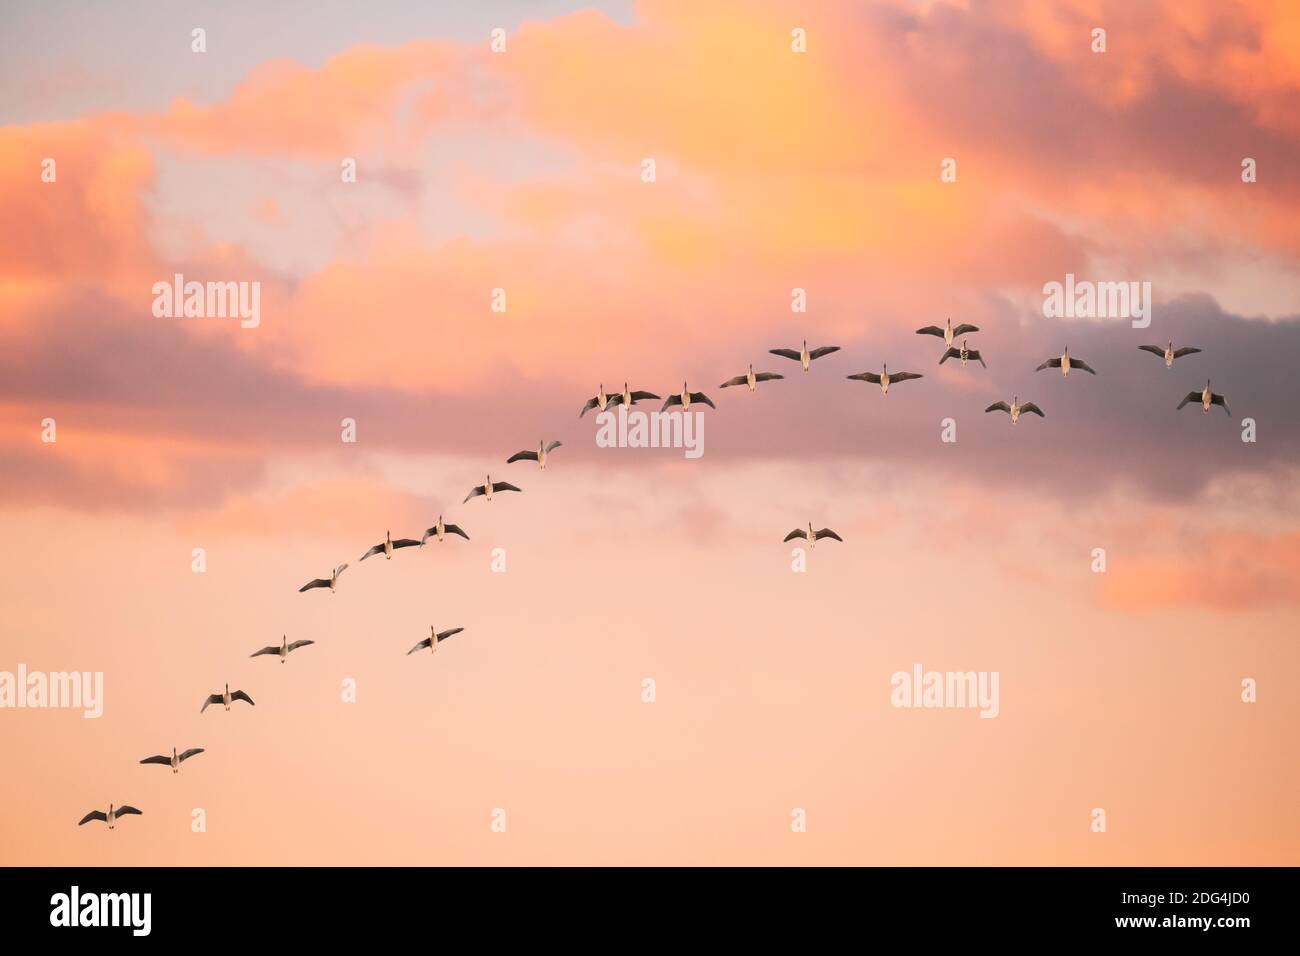 Schwarm Von Enten Fliegen In Sonnigen Sonnenuntergang Herbst Frühling Himmel Während Ihrer Migration. Veränderter Himmel Bei Sonnenaufgang Stockfoto